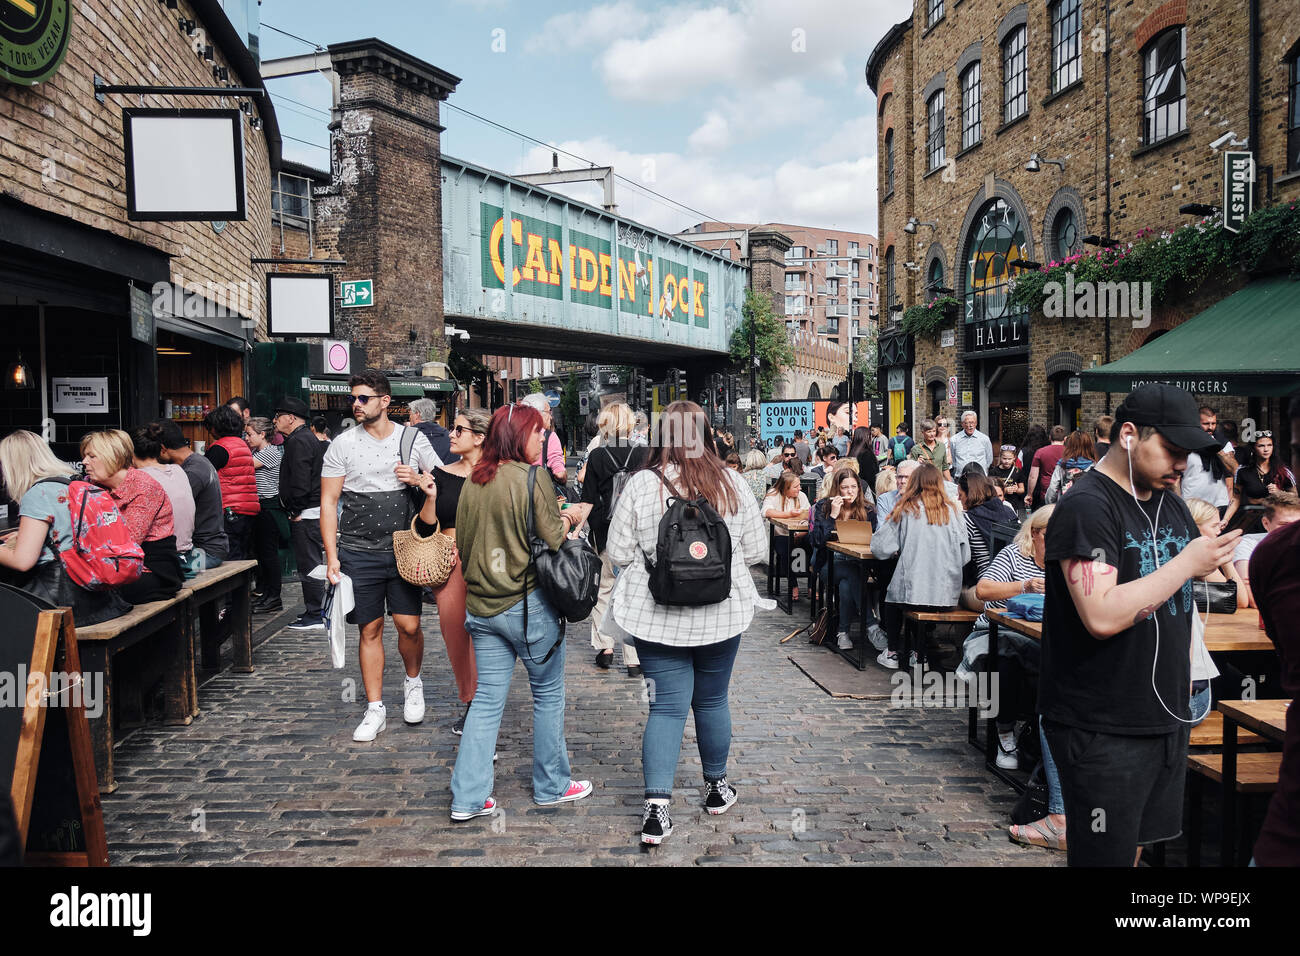 Über 100.000 Menschen besuchen Camden Market jedes Wochenende, macht es zu einem der beliebtesten touristischen Ziele in London. Stockfoto